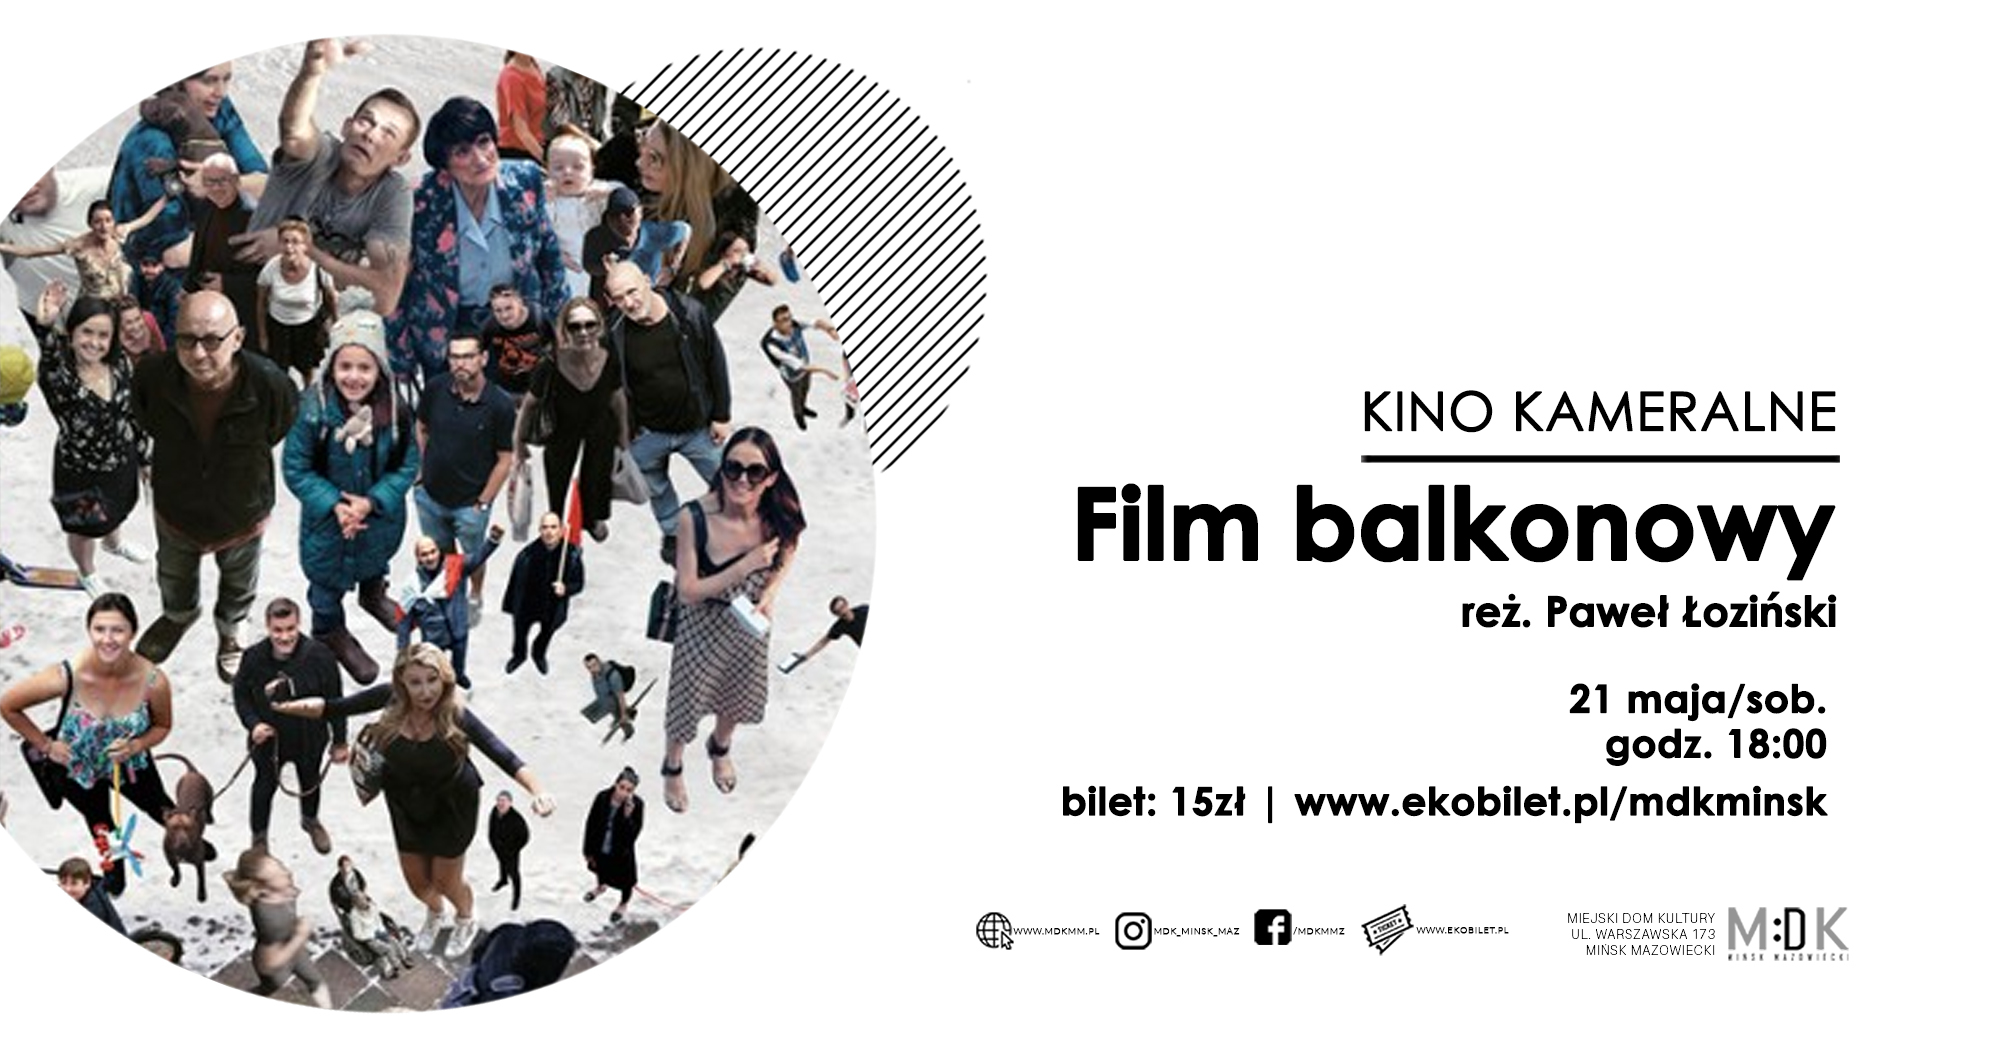 Film balkonowy | kino kameralne w MDK